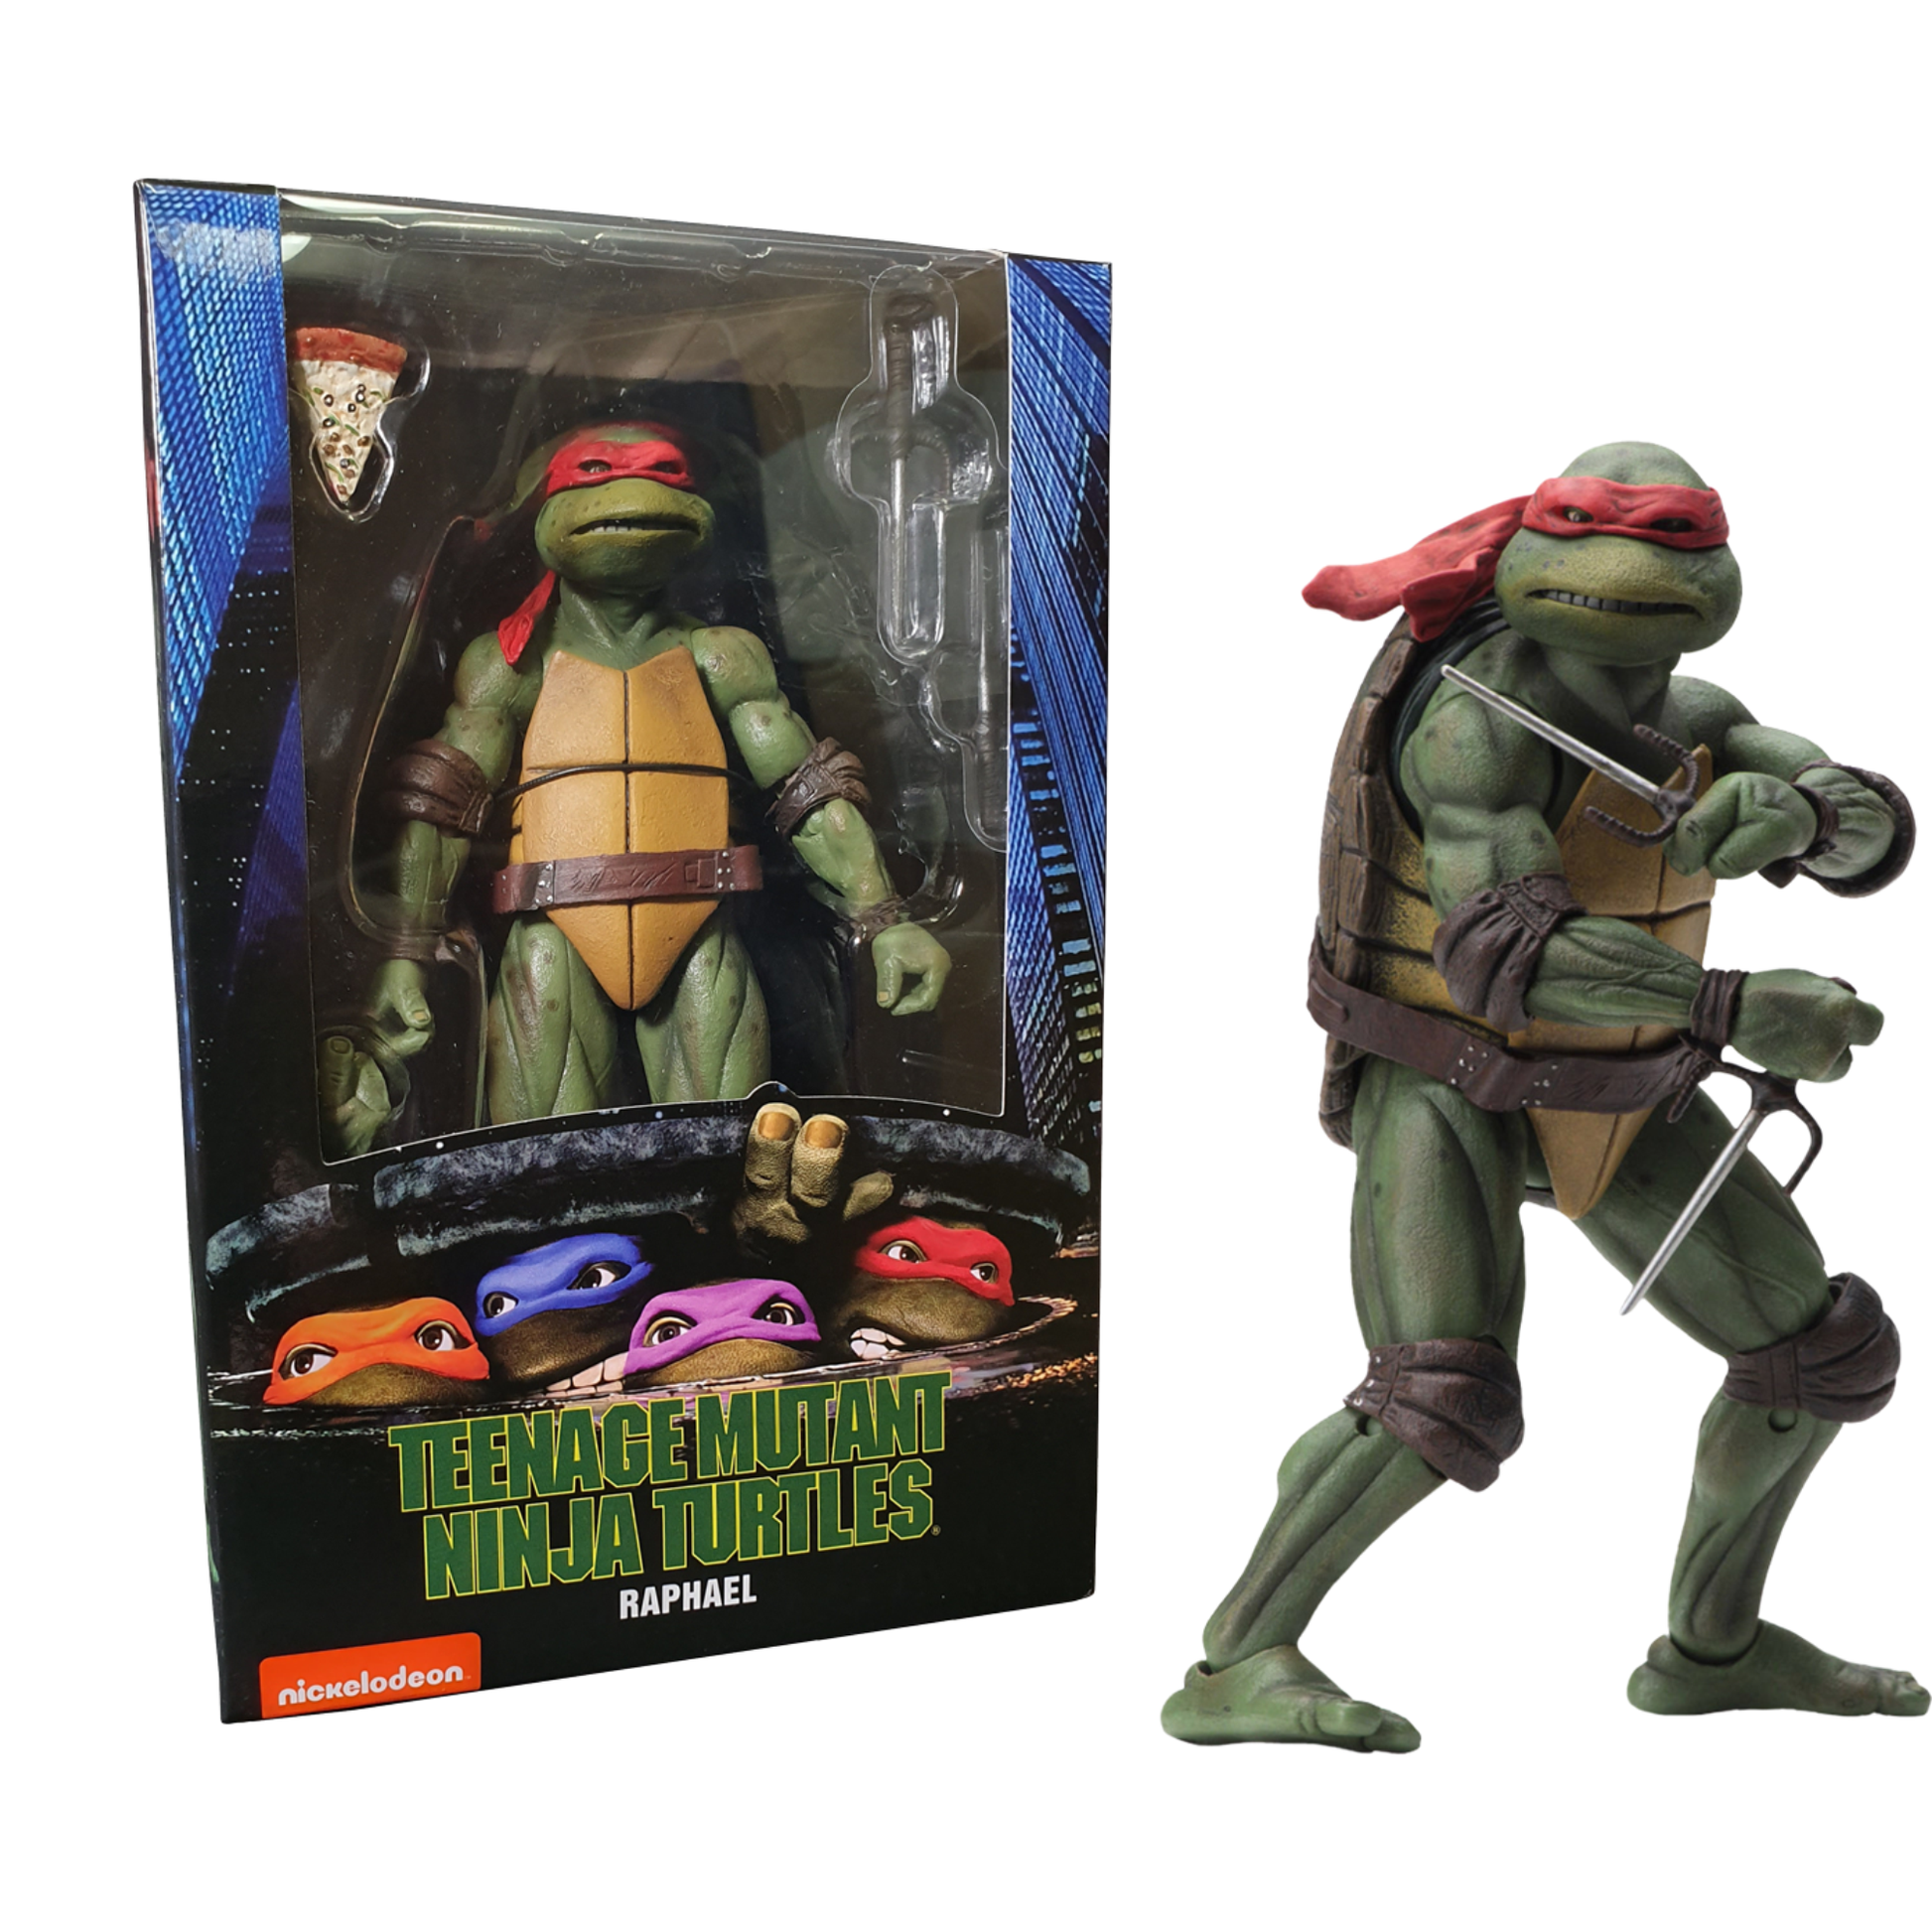 koolaz-ltd - NECA Teenage Mutant Ninja Turtles (1990) - Raphael 7” Action Figure - NECA - Figure